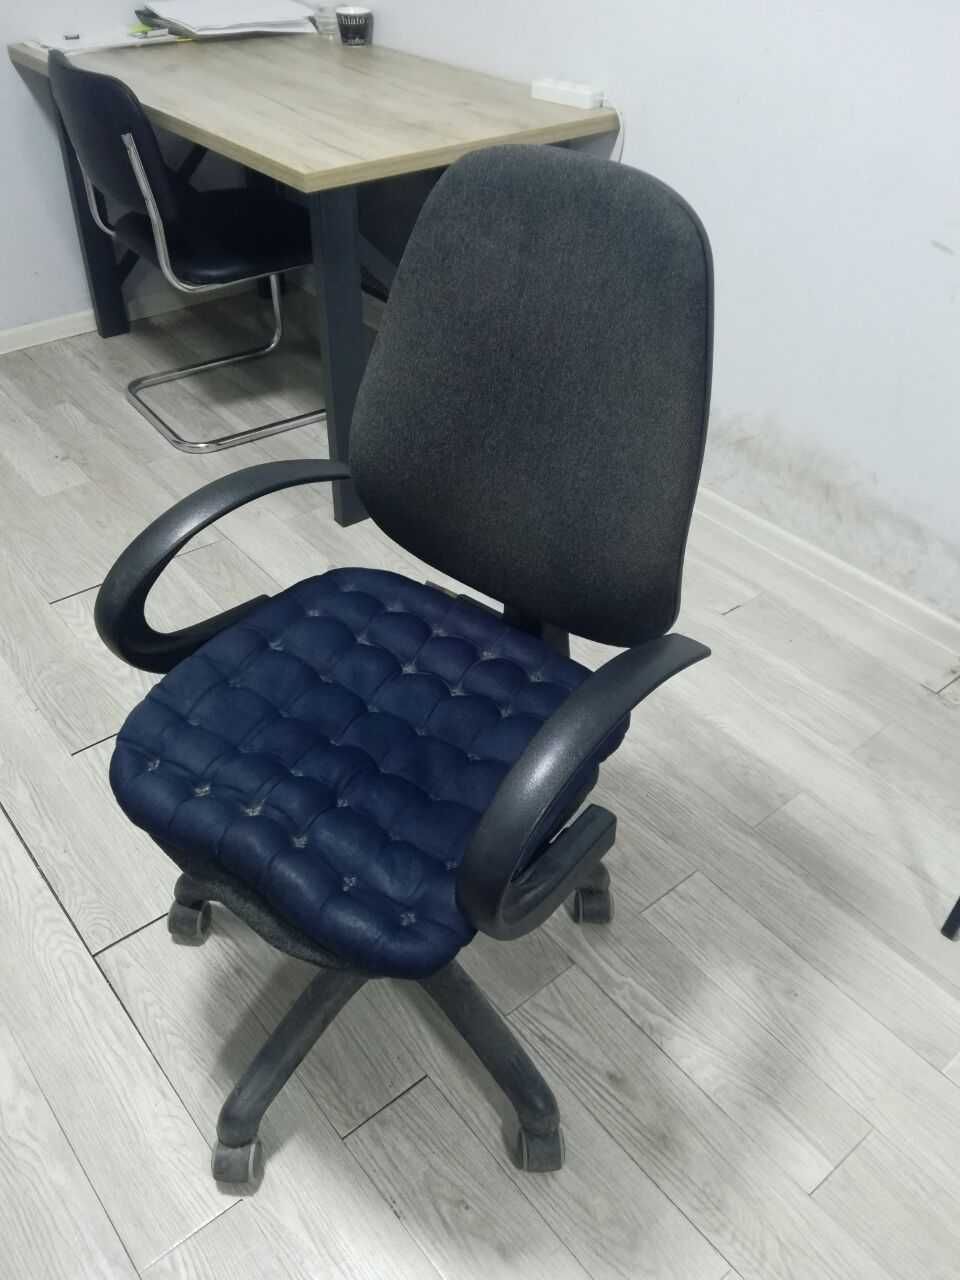 Stul kreslo stul ofis stul кресло стул офис стул